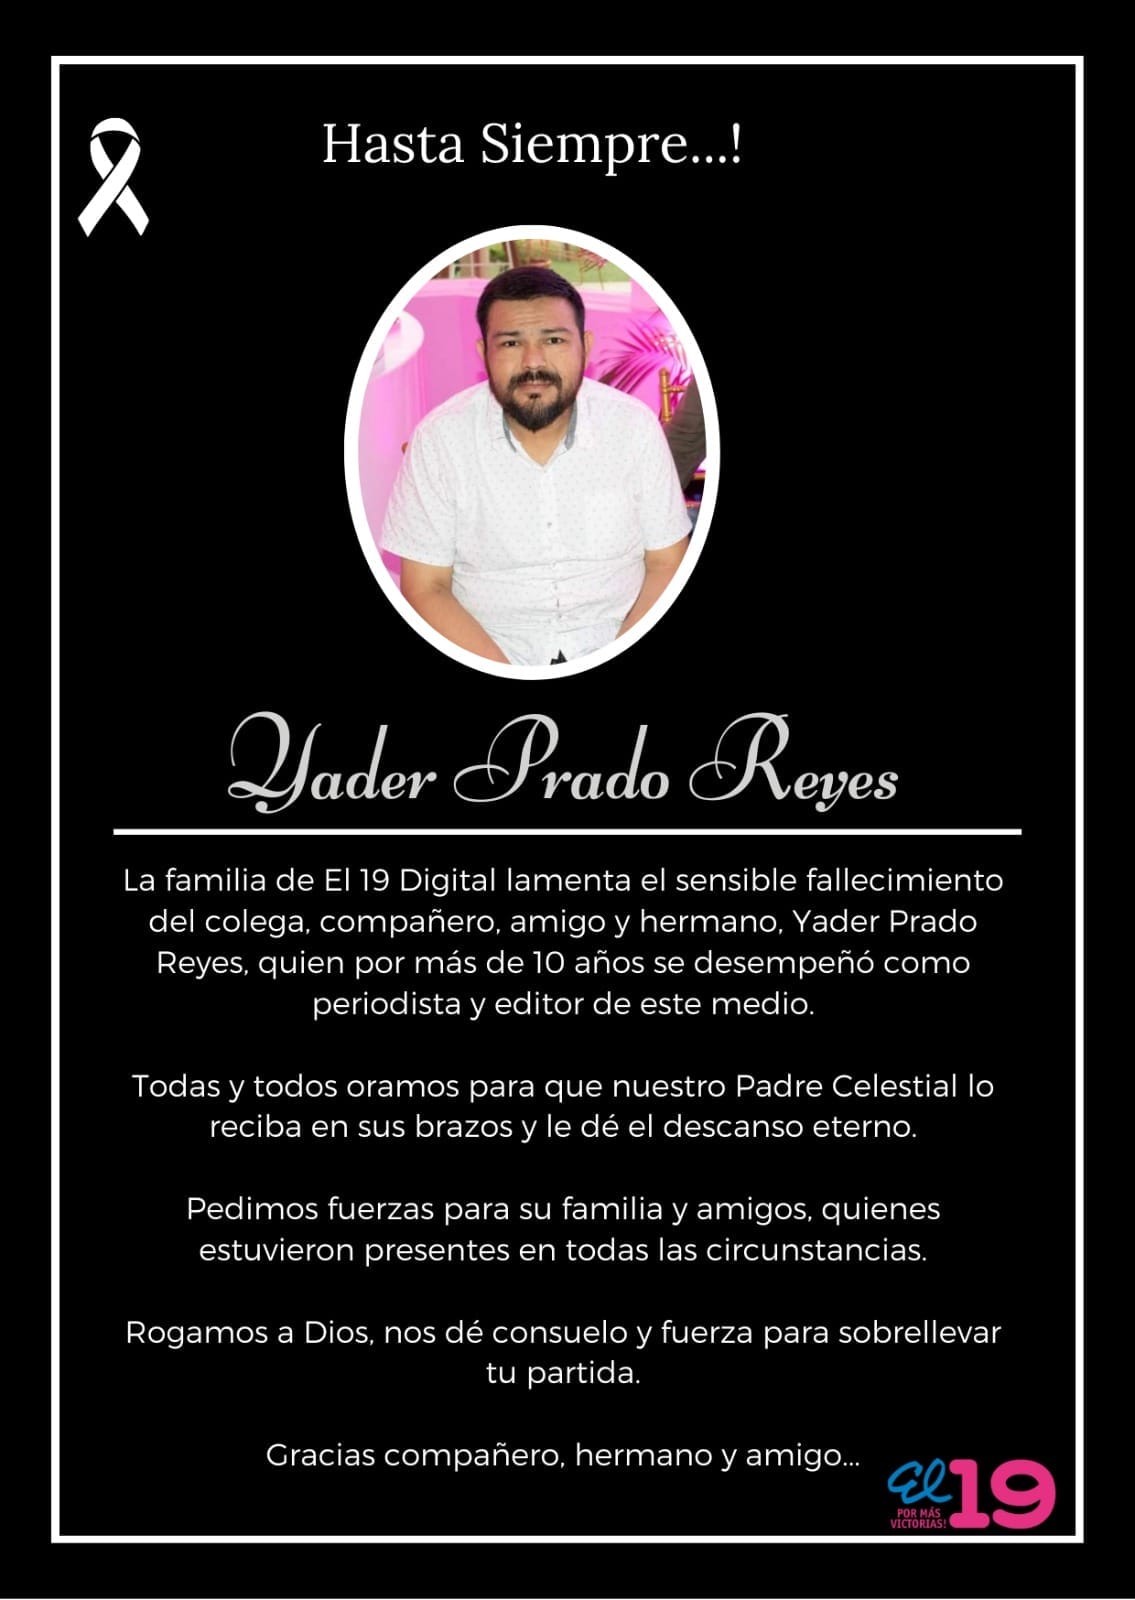 La familia de El 19 Digital lamenta el sensible fallecimiento del colega, compañero, amigo y hermano, Yader Prado Reyes,